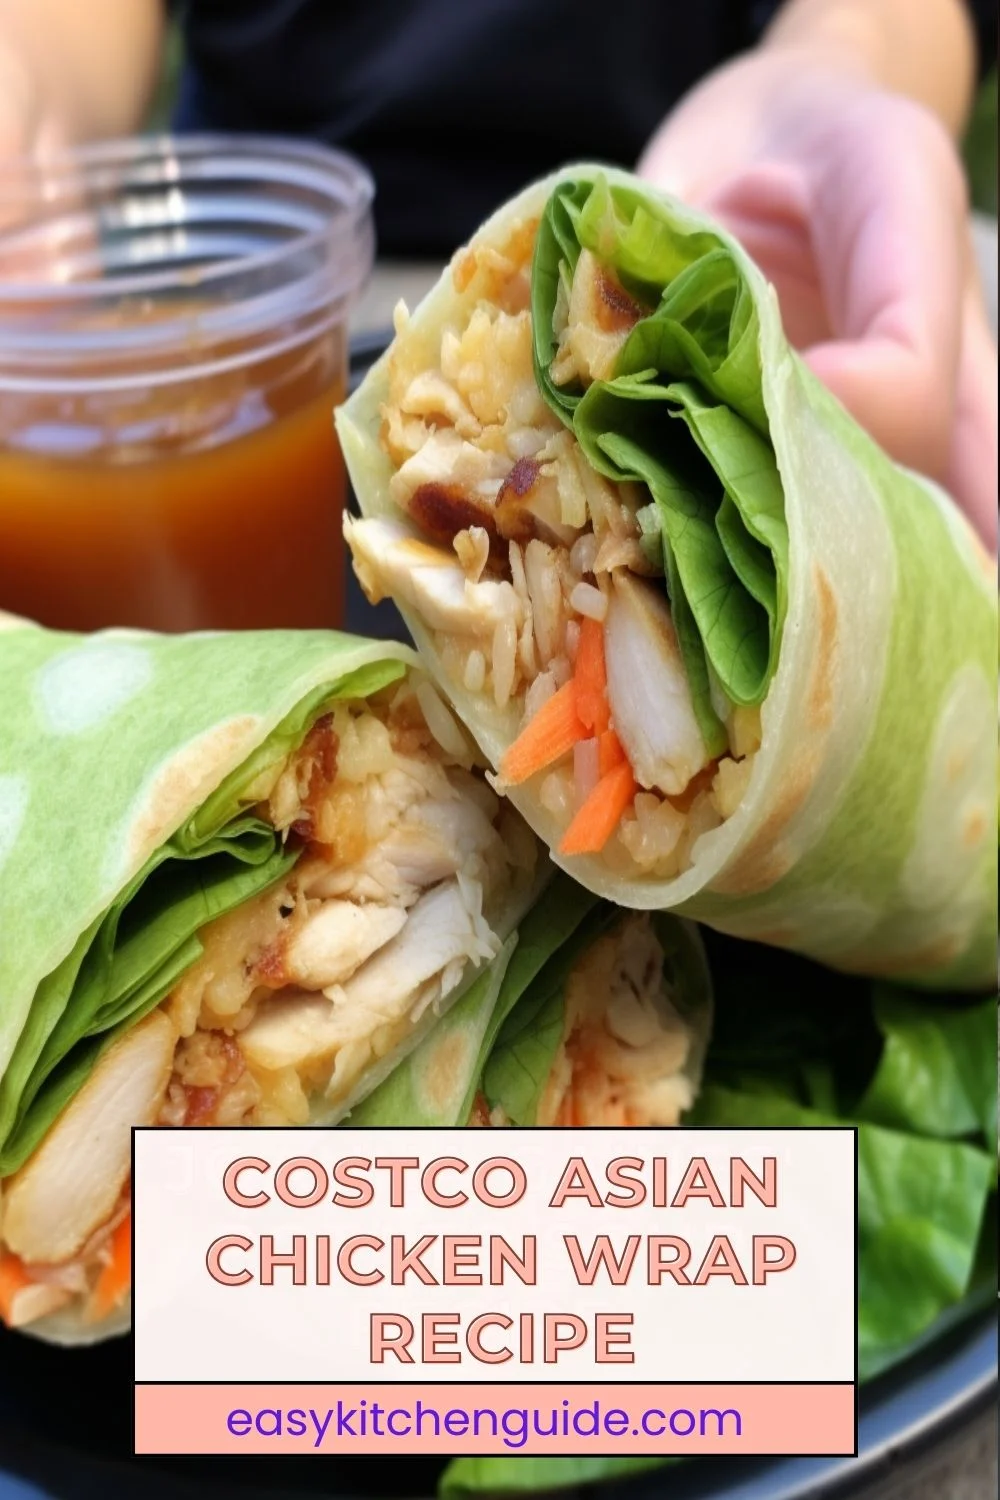 Costco Asian Chicken Wrap Recipe